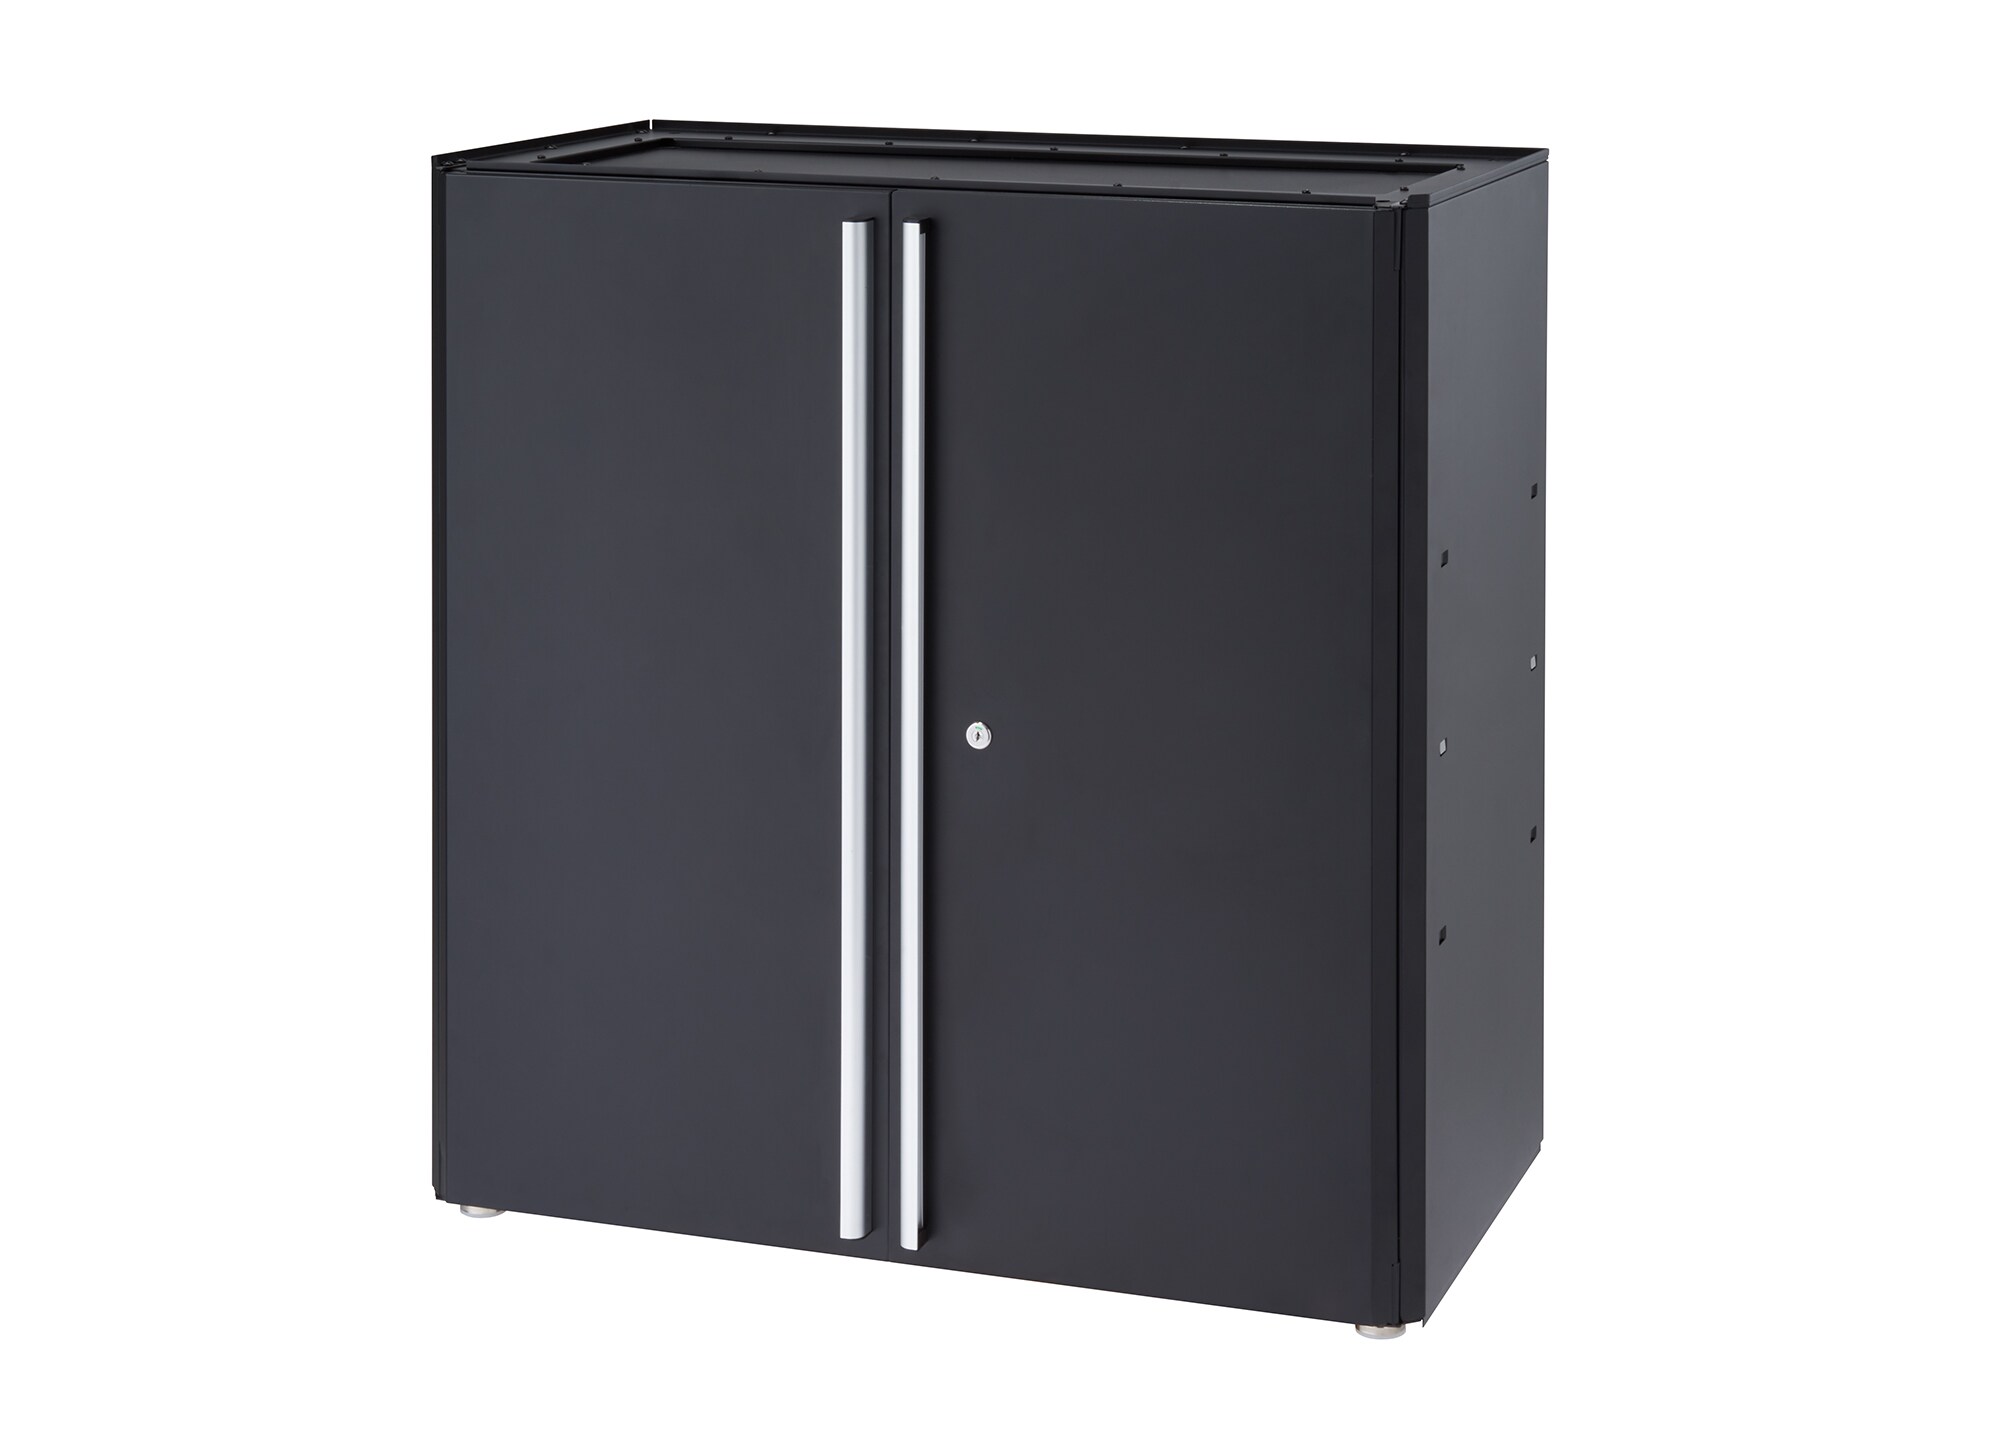 Stack-On Garage Cabinet Set, Black: 2 Wall Cabinets, Base Cabinet